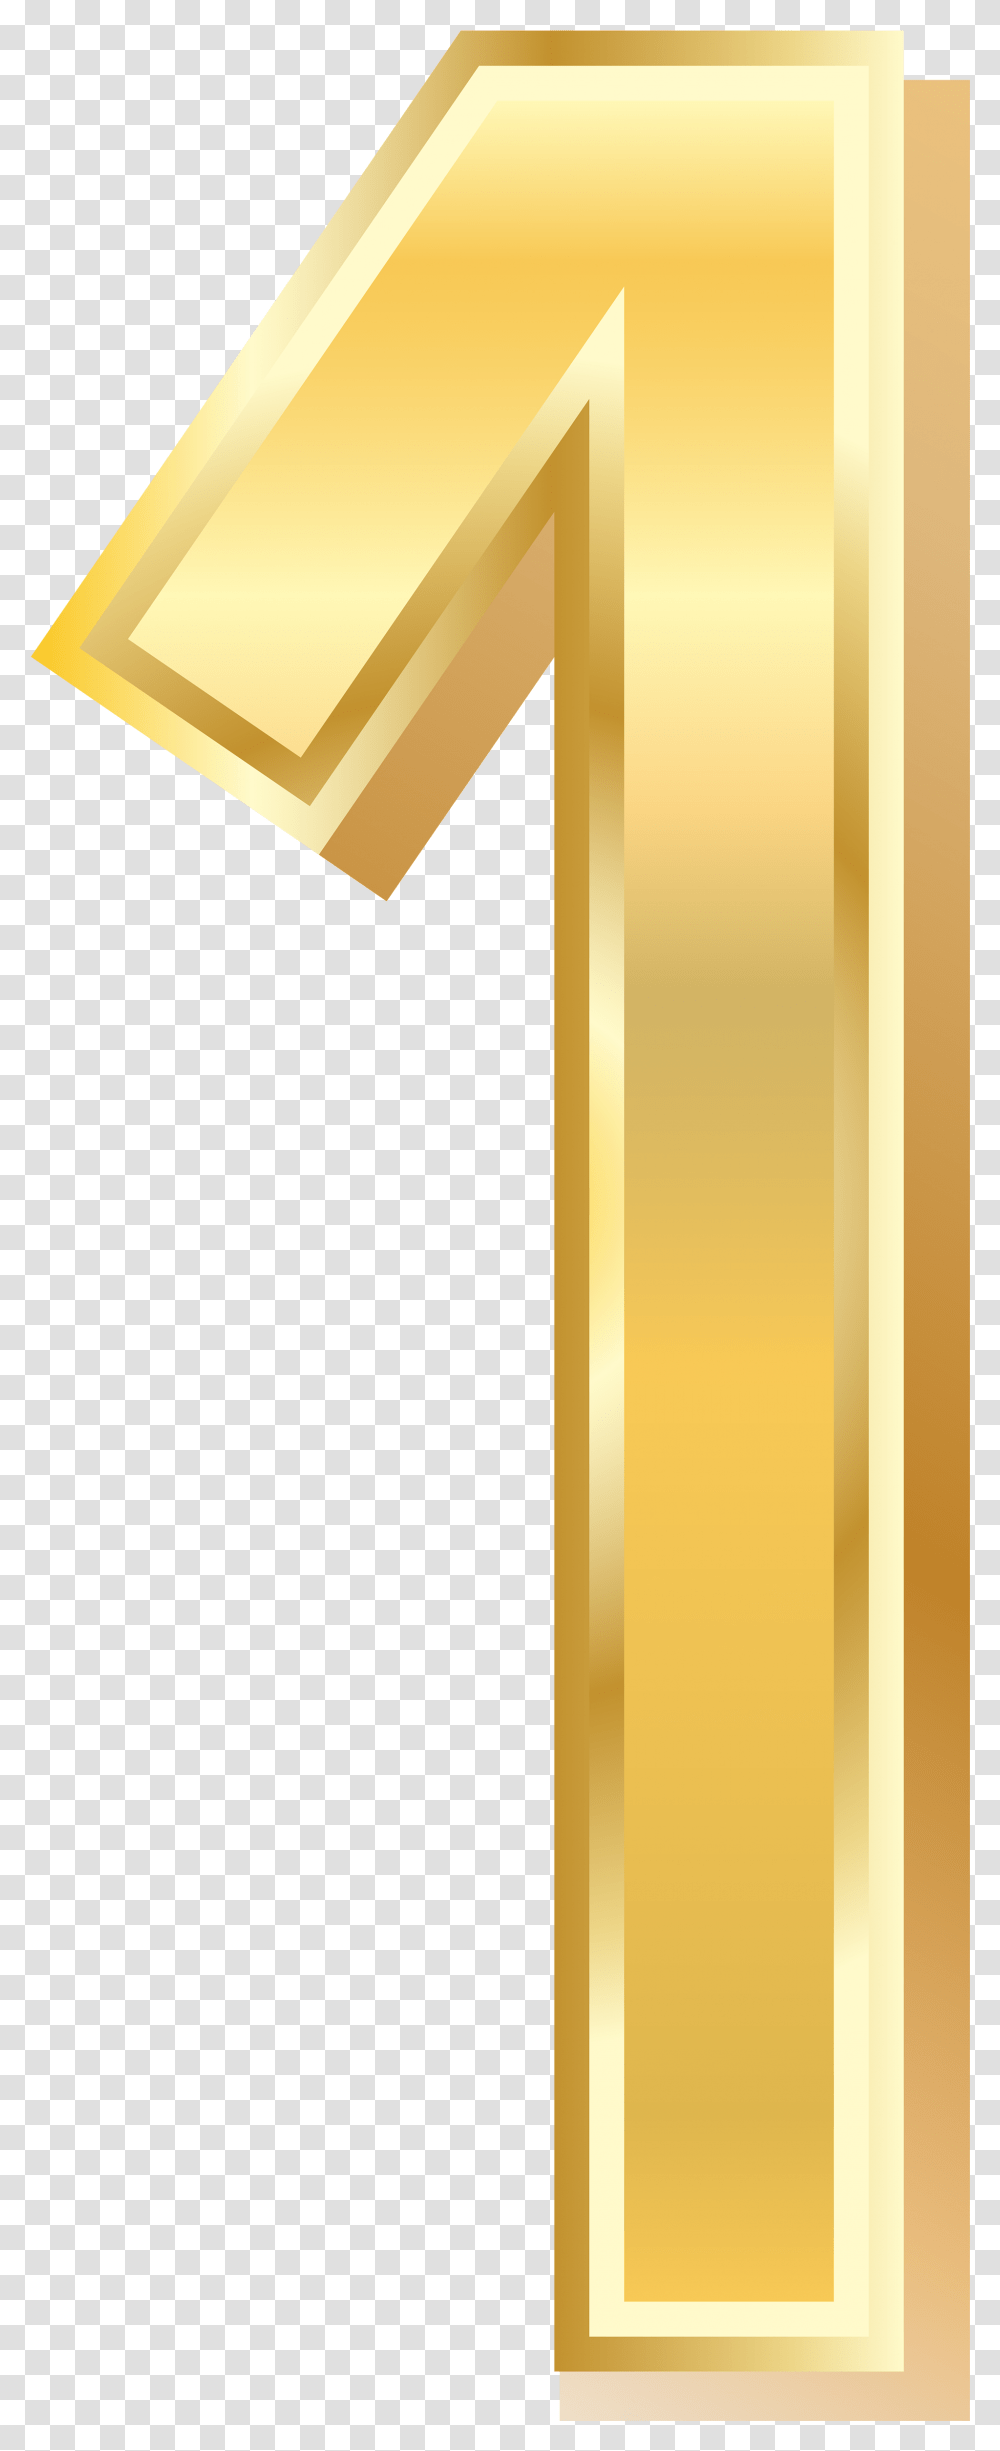 Golden Number 1, Cross, Key Transparent Png